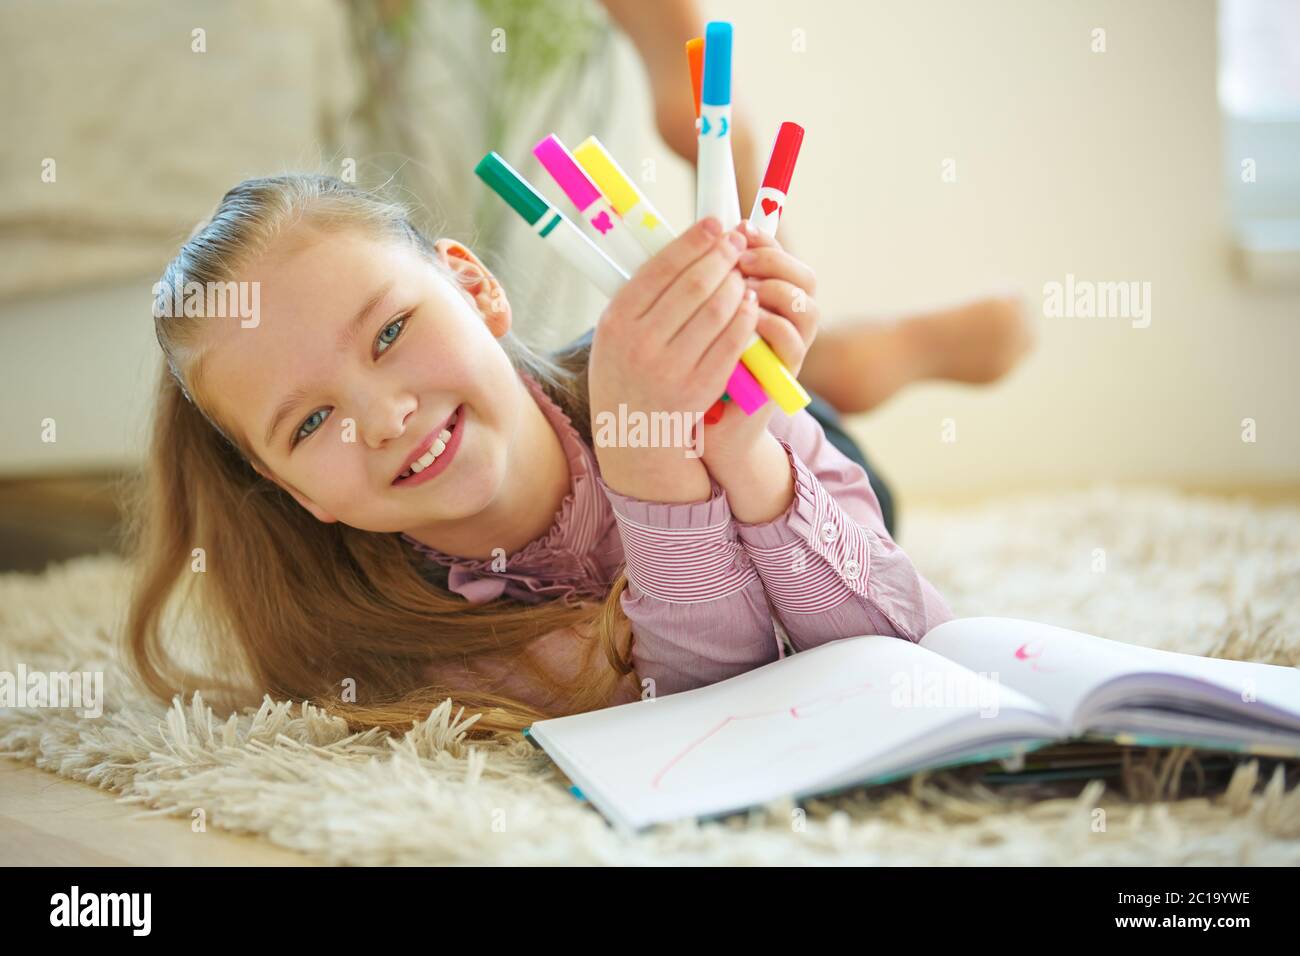 Enfant souriant avec beaucoup de crayons colorés pour la peinture Banque D'Images